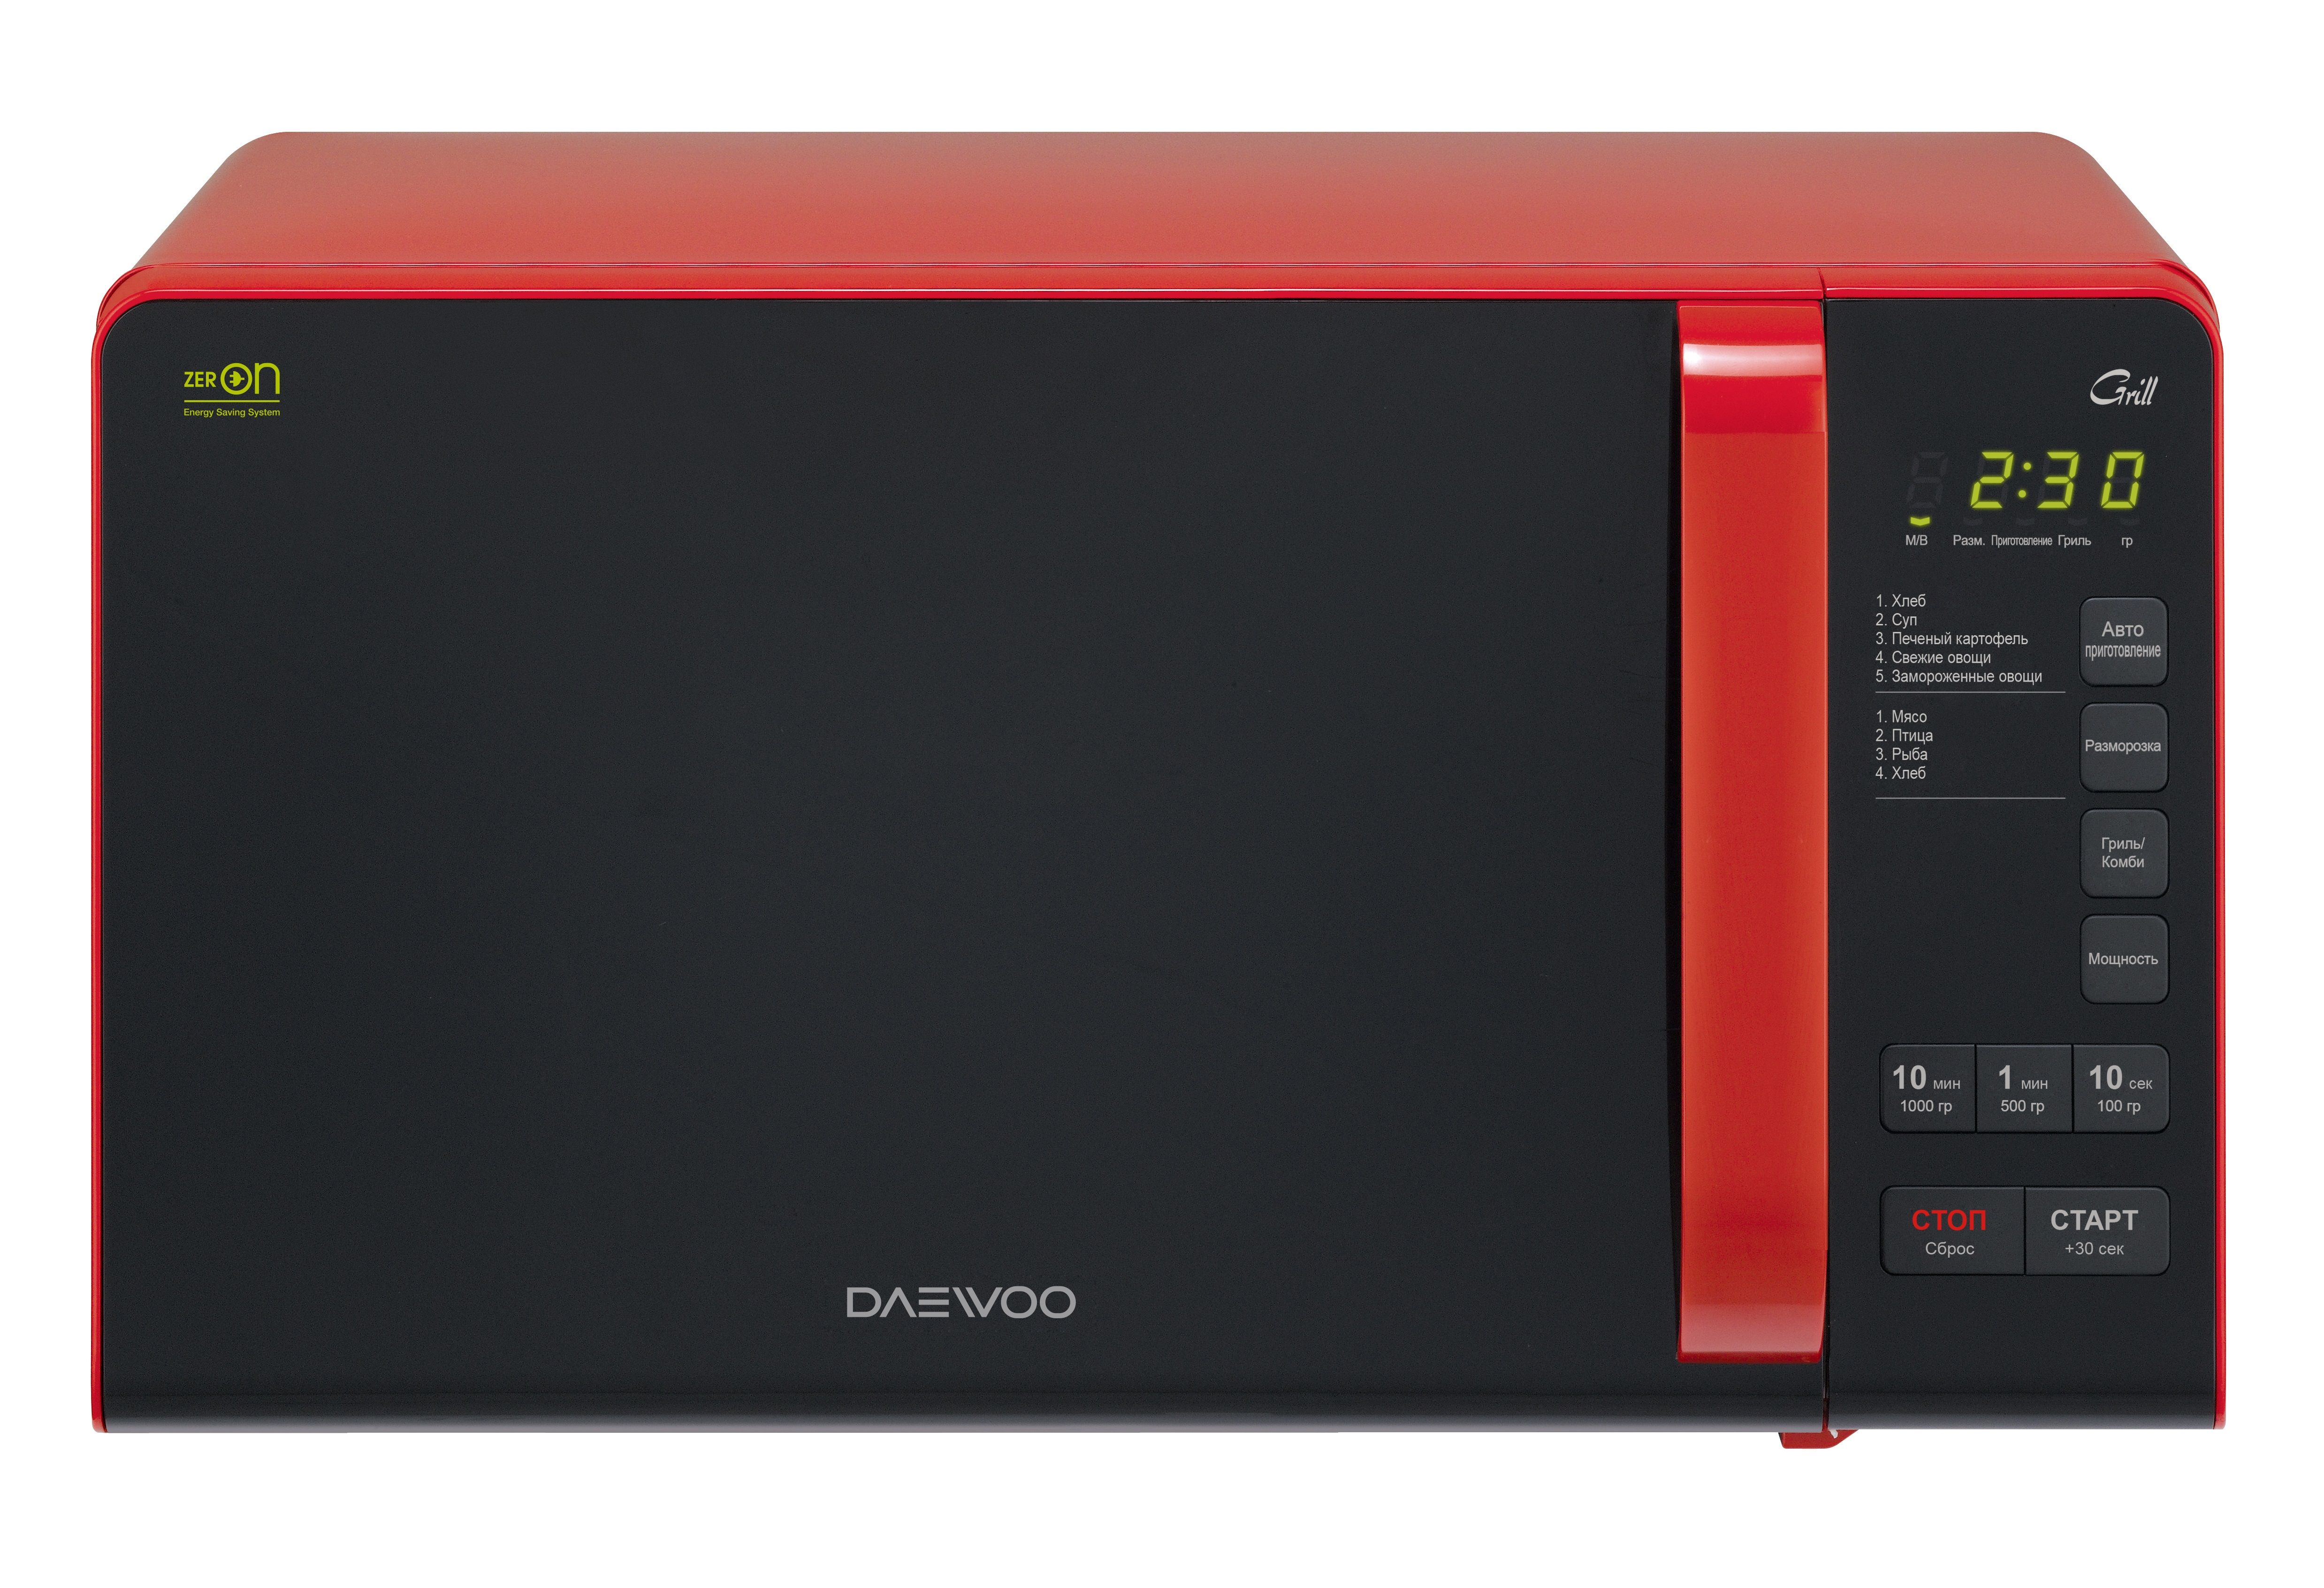 Микроволновка купить в саратове. Микроволновая печь Daewoo KQG 663d. Микроволновая печь Daewoo KQG-663r красный/черный. Микроволновая печь Daewoo Electronics KQG-663r. Daewoo Electronics Kor-663k.